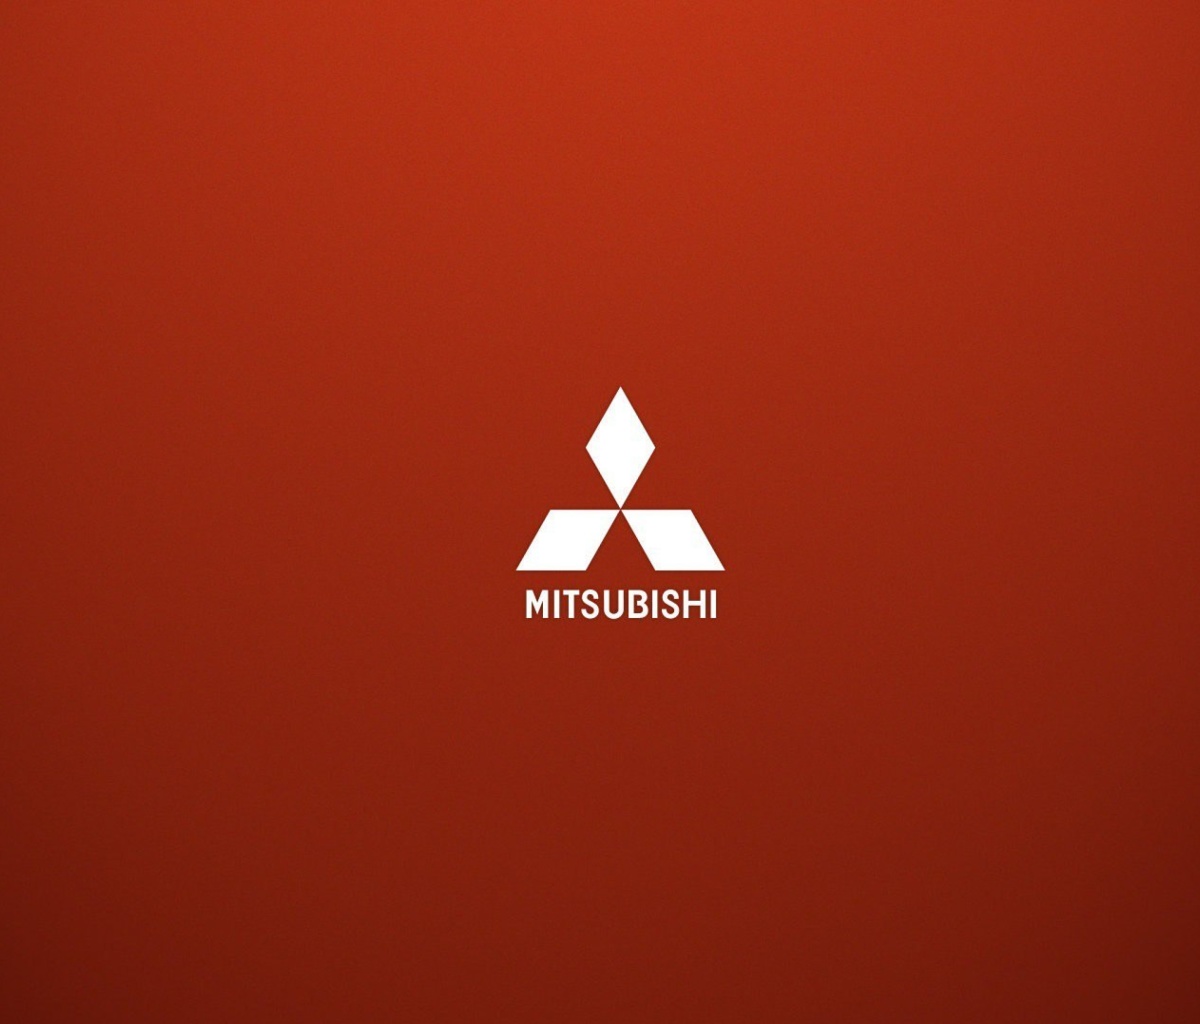 Mitsubishi logo wallpaper 1200x1024